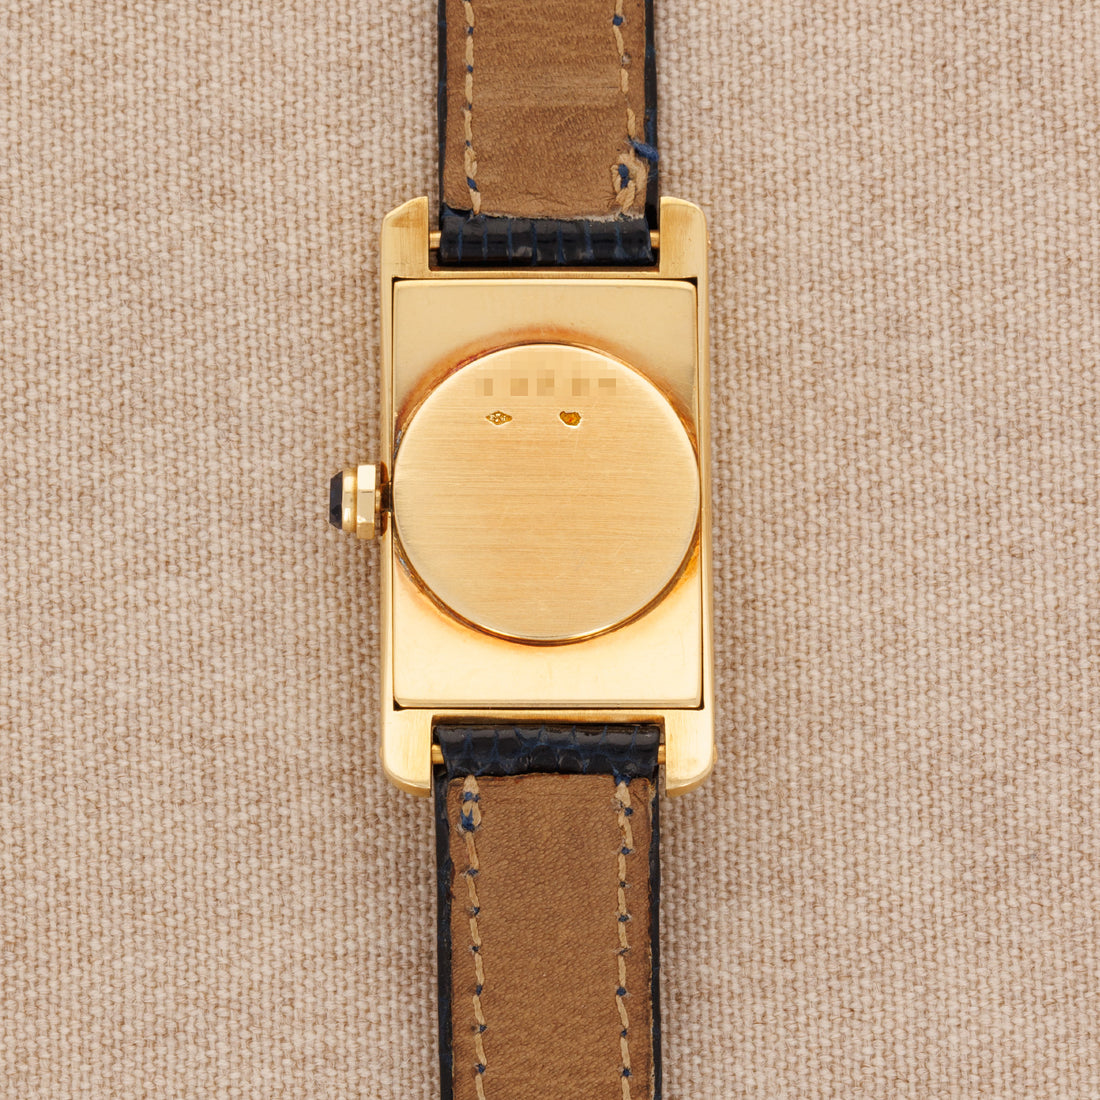 Cartier Yellow Gold Tank Cintree Watch